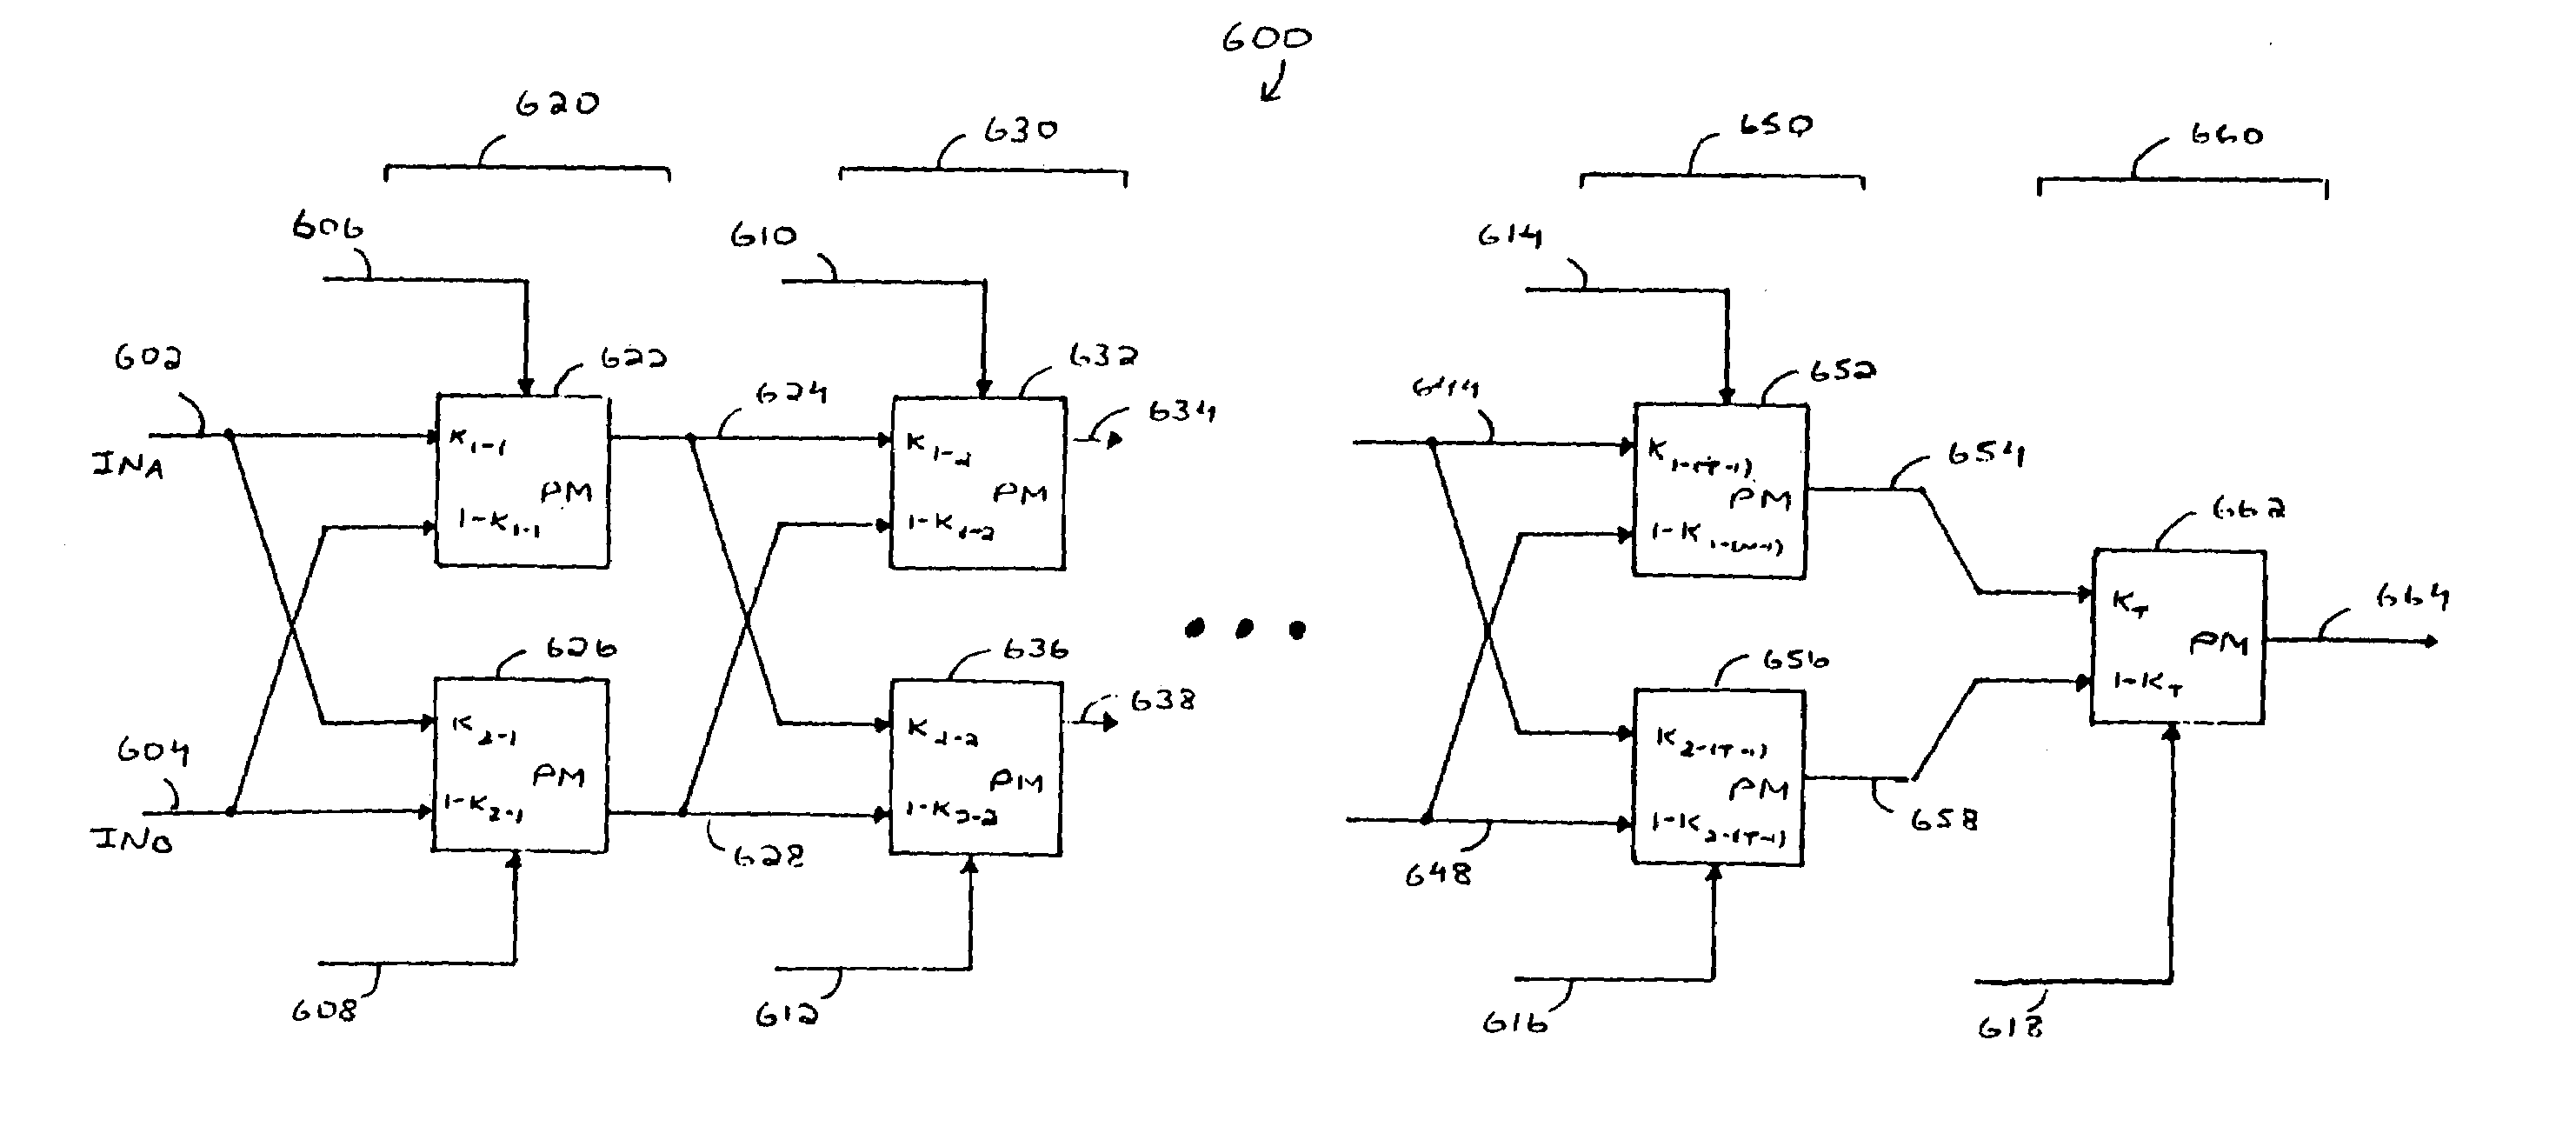 Digital delay-locked loop circuits with hierarchical delay adjustment